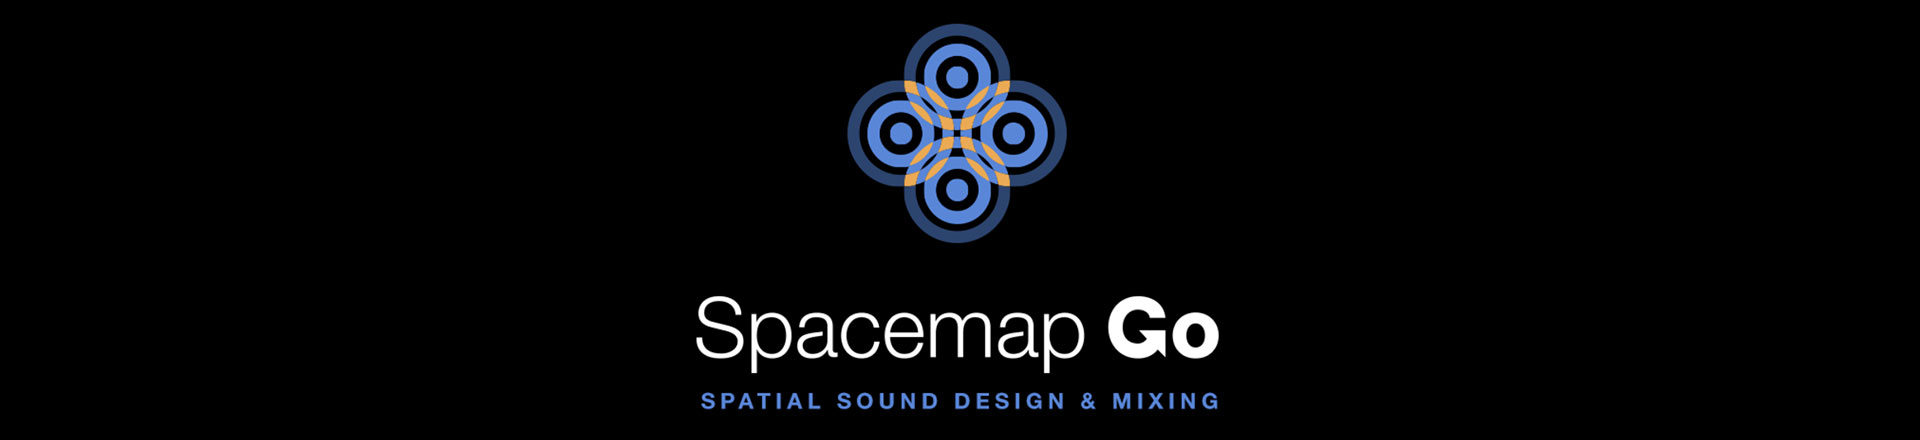 Bezpłatna wtyczka Spacemap Go daje bezpośredni dostęp do dźwięku immersyjnego i miksowania audio na żywo